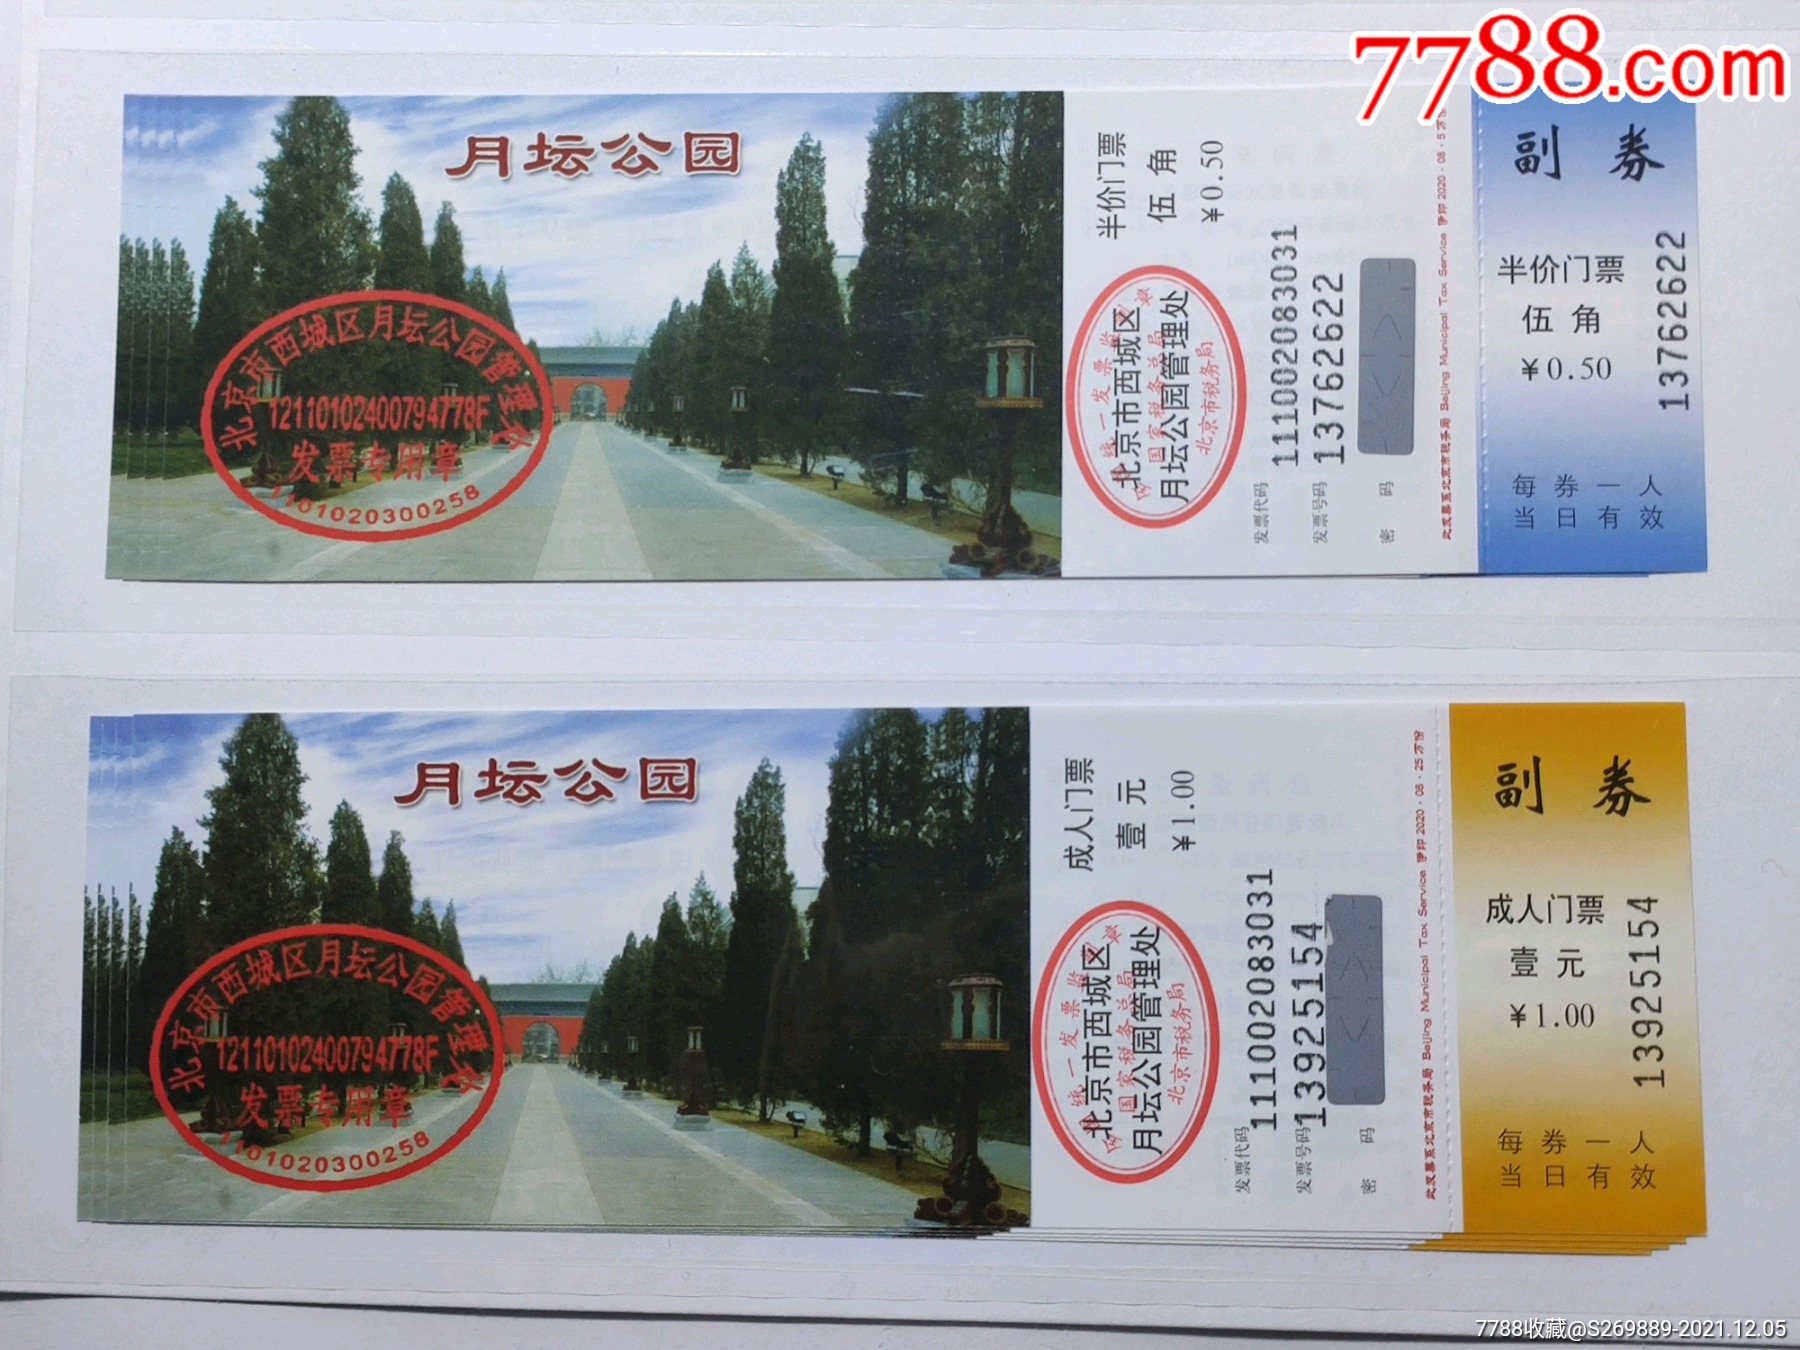 北京月坛公园门票一套2张